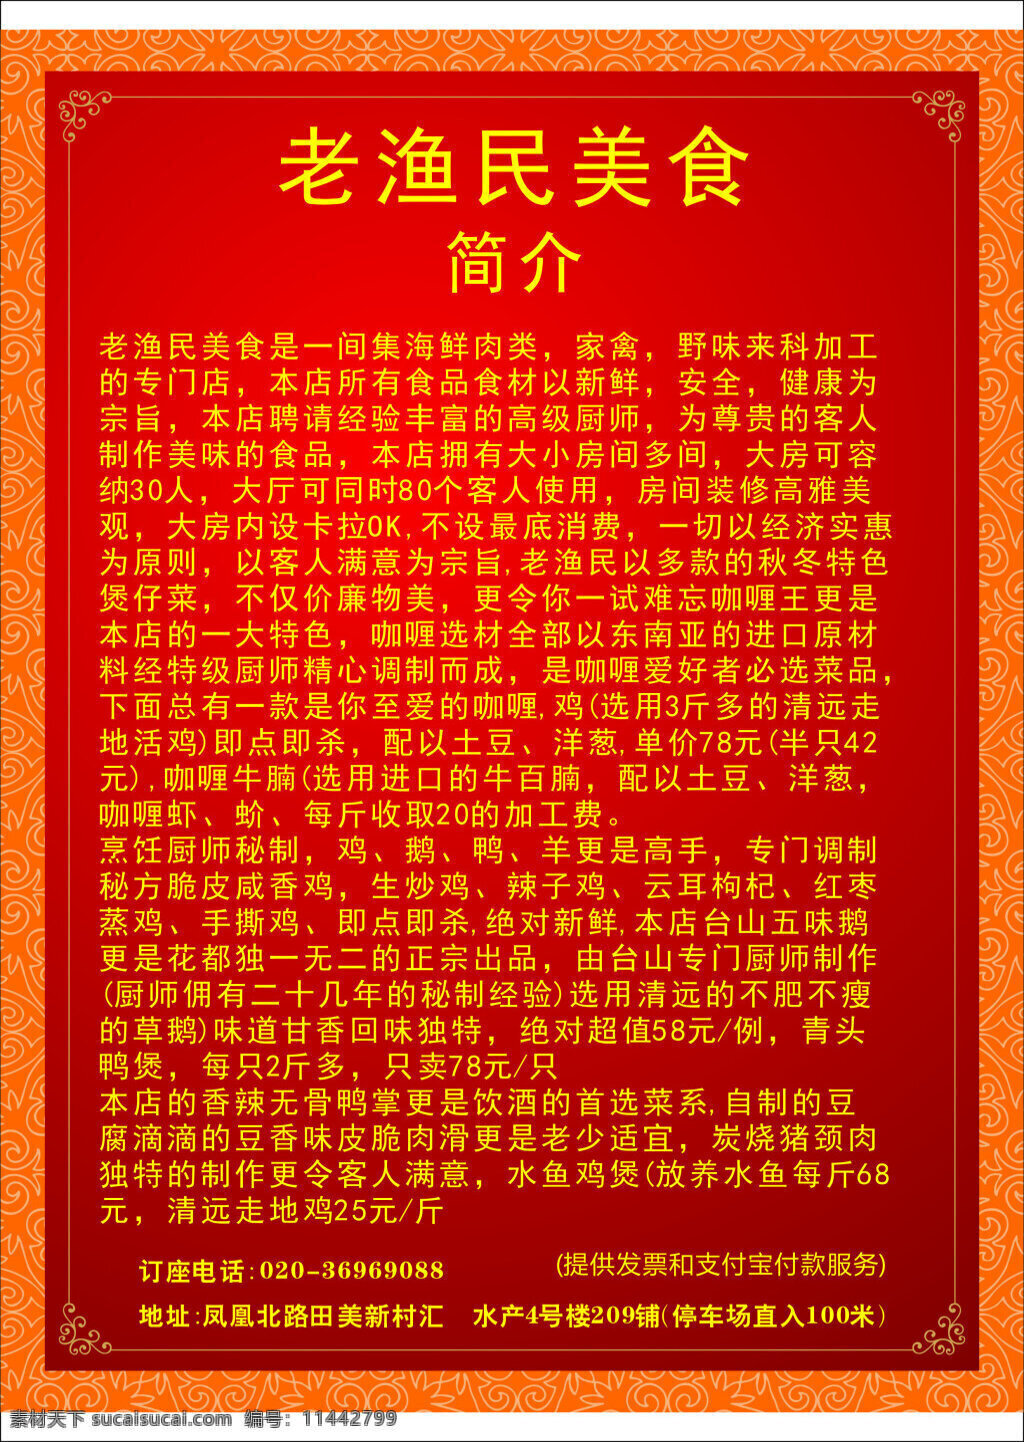 大排档宣传单 橙黄色背景 宣传海报 红色背景 中国风纹框 cdr格式 大排设计素材 大 排挡 设计模版